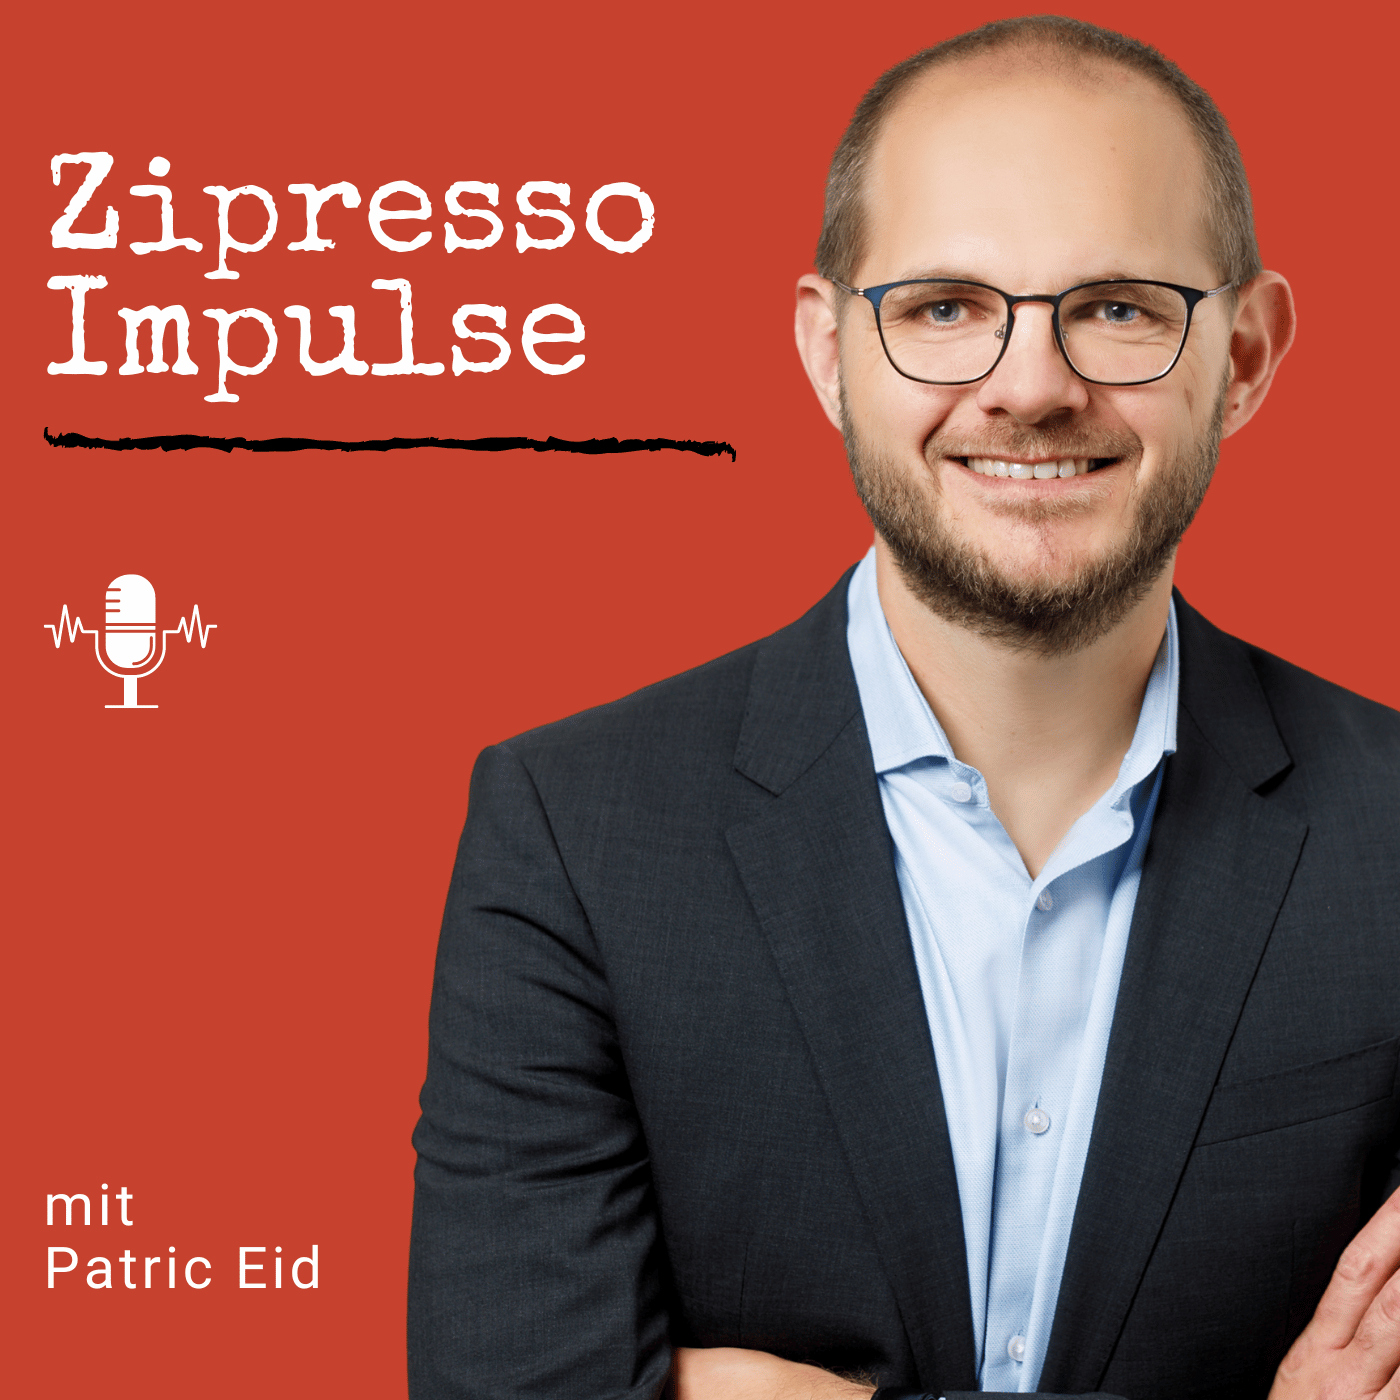 Zipresso Projektmanagement Podcast